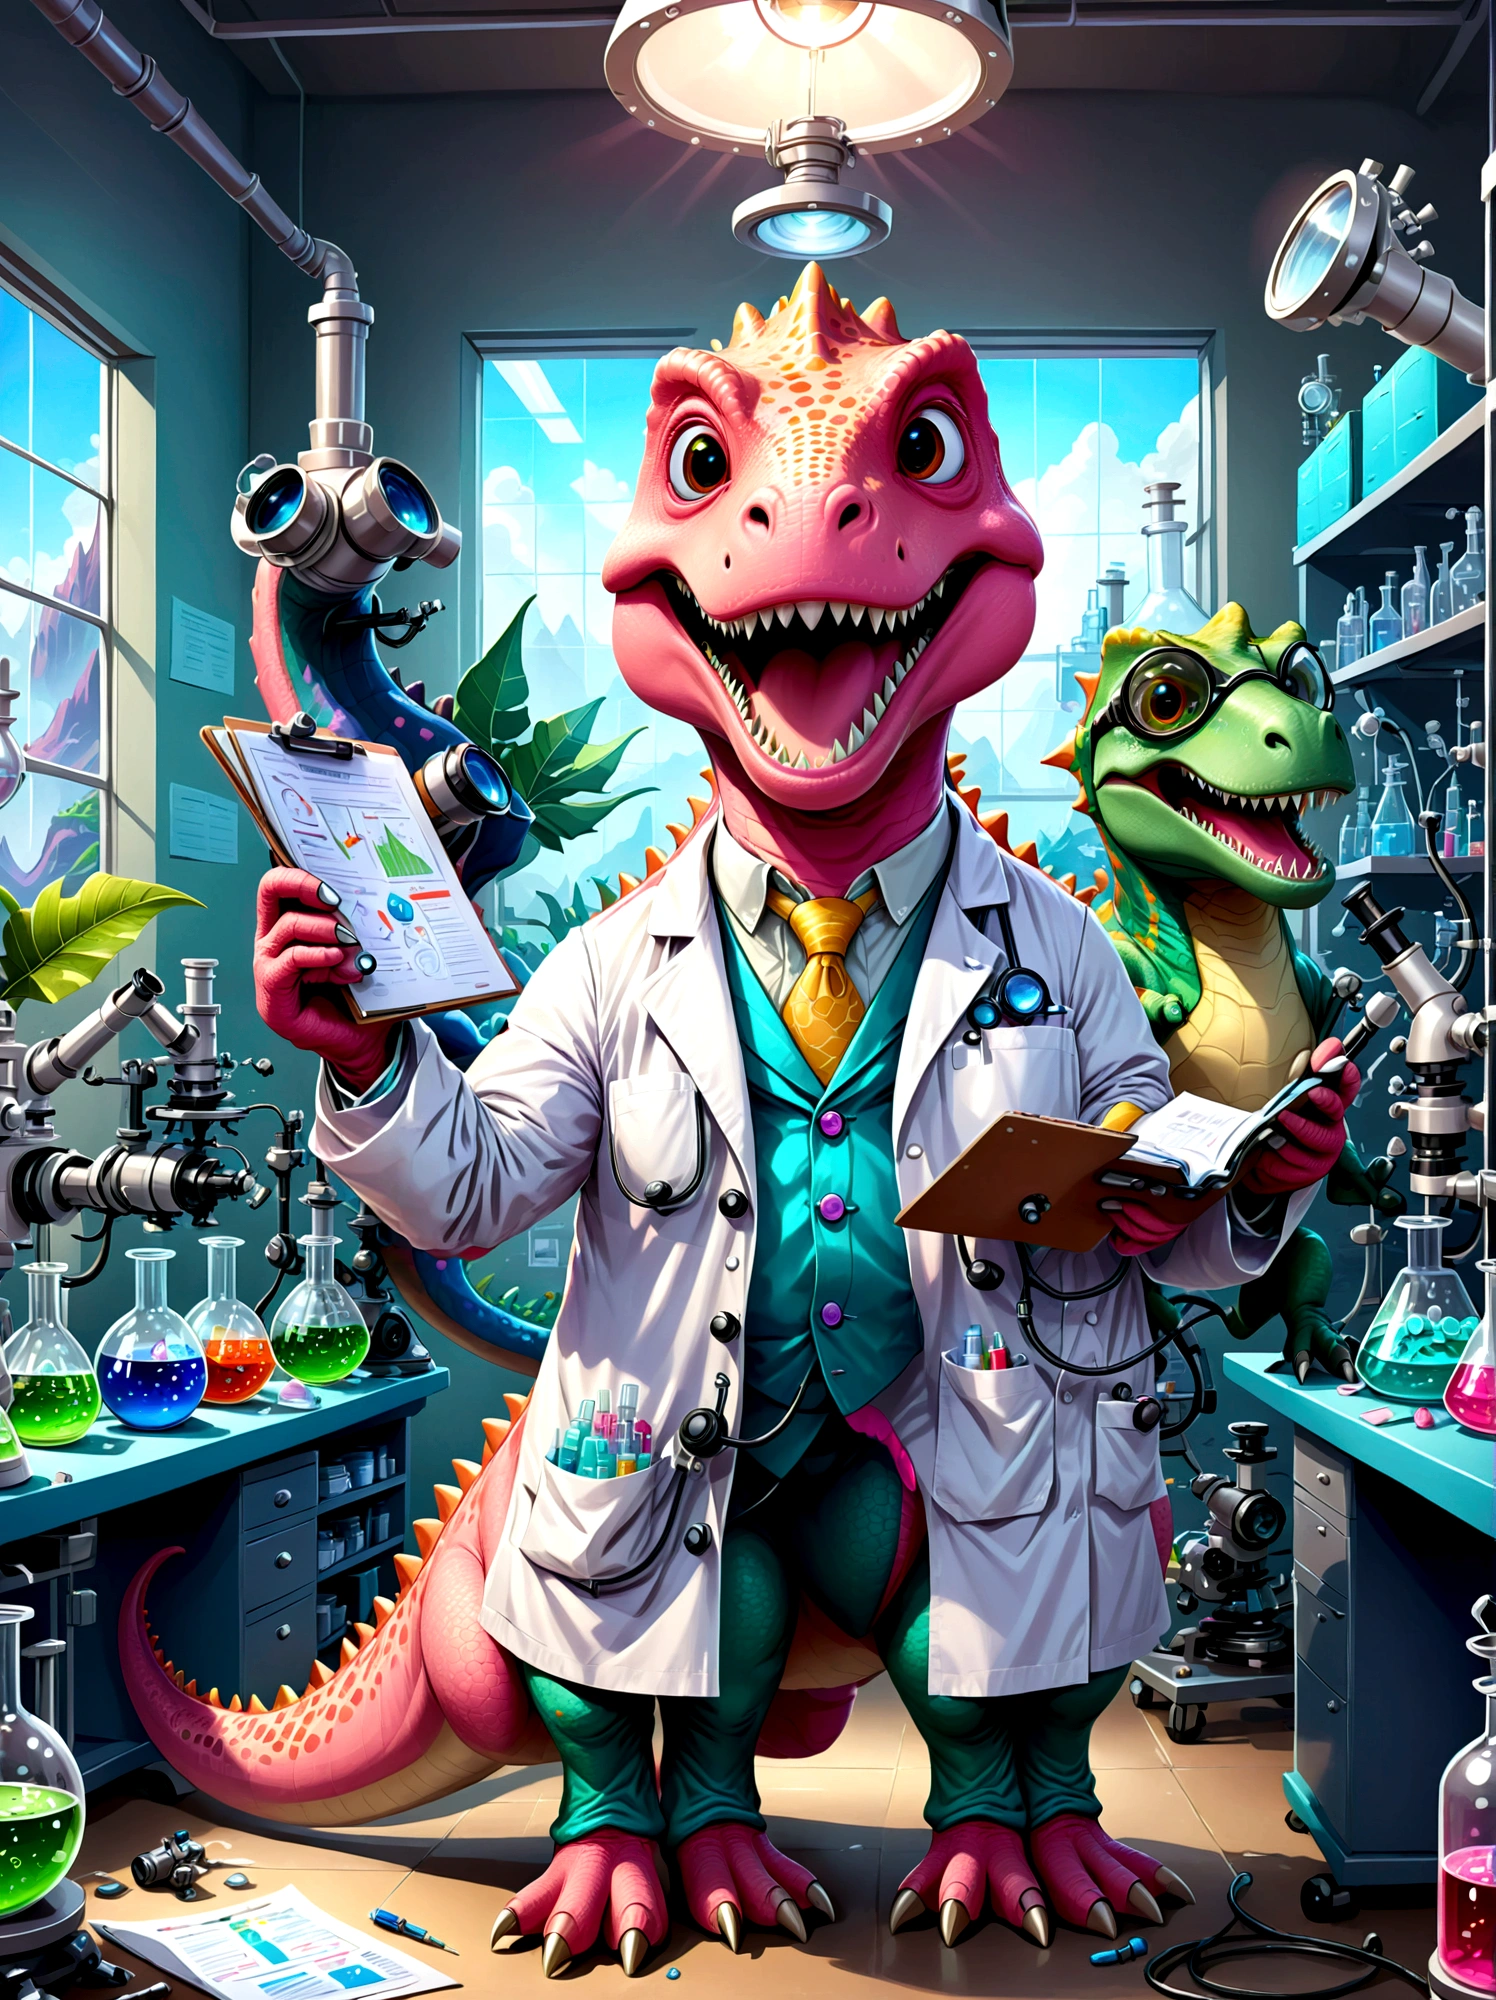 一只粉红色的恐龙角色，, 露齿微笑, 打扮成研究员, 他们在实验室里, 周围都是显微镜等科学设备, 烧杯, 图表和图形. 恐龙穿着实验室工作服, 保护眼睛, 手里拿着一个剪贴板, 纸张散落各处, 表示工作繁忙, 实验室里充满了头顶荧光灯发出的光线, 用卡通风格来说明